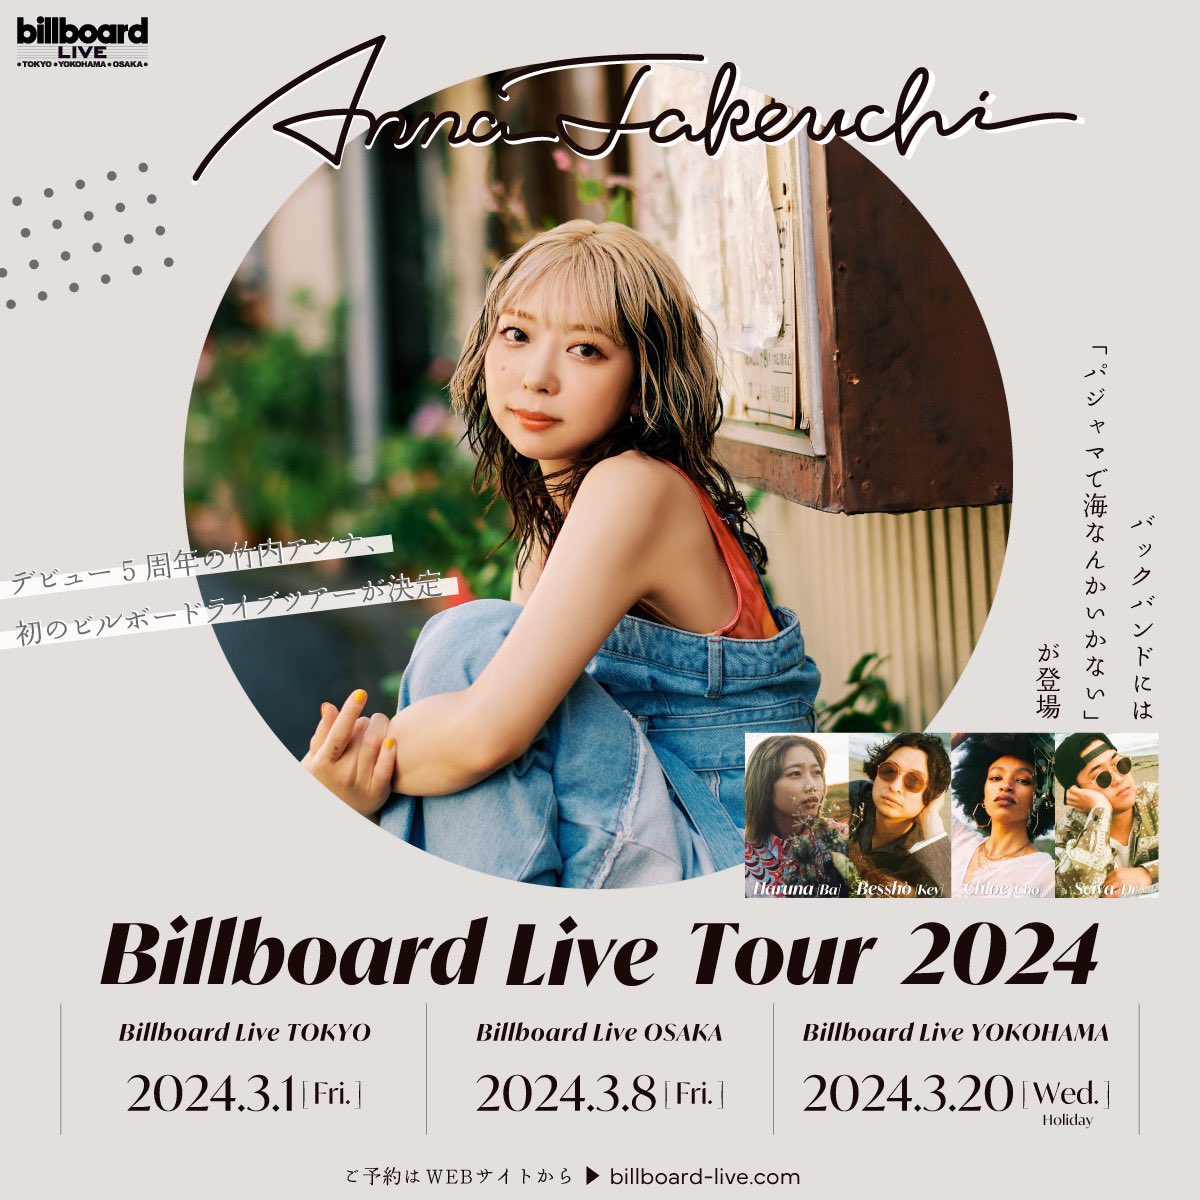 ［ 𝐓𝐎𝐃𝐀𝐘 ］ 竹内アンナ Billboard Live Tour 2024 3.20(水・祝) Billboard Live YOKOHAMA 1st OPEN 15:30 START 16:30  2nd OPEN 18:30 START 19:30 バックバンドとして、Bessho・Haruna・Seiya・Chloeが参加します。 いよいよツアーファイナル‼︎ #at_Billboard takeuchianna.com